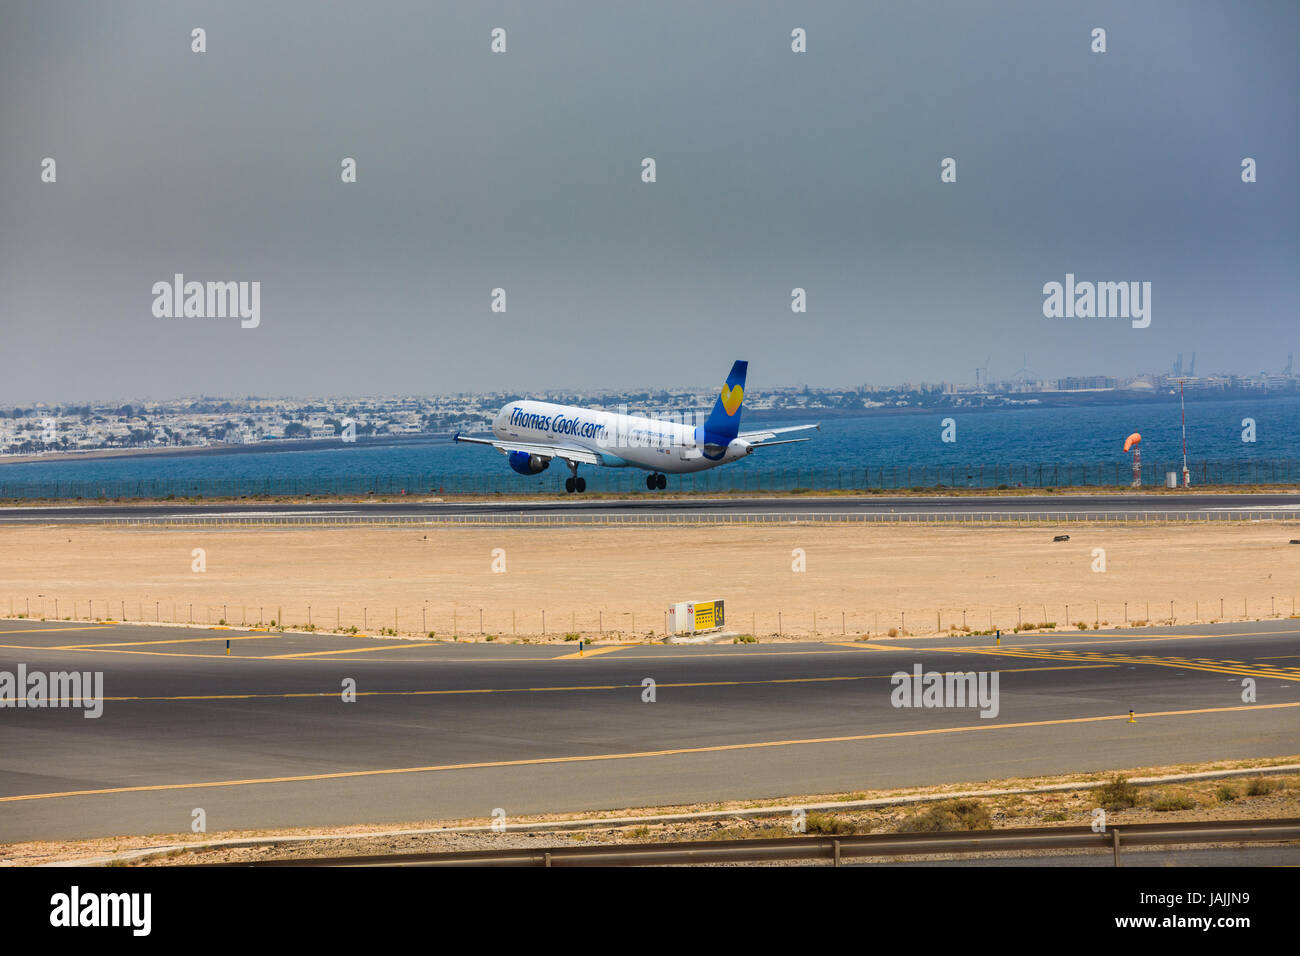 ARECIFE, Spagna - Aprile 16 2017: Airbus A321 di ThomasCook.com con la registrazione G-Niko in atterraggio a Lanzarote Airport Foto Stock